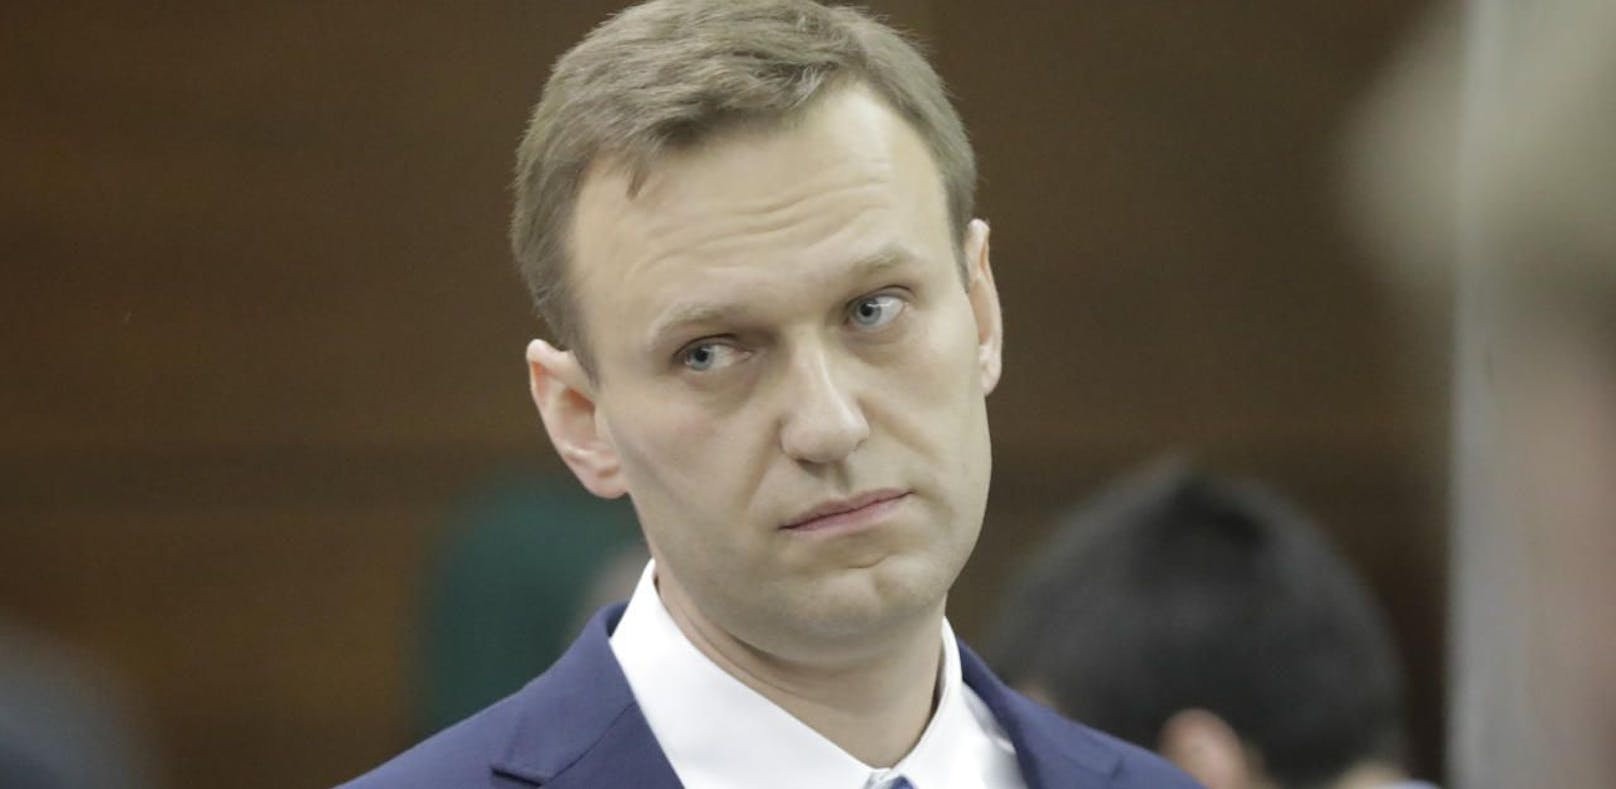 Putin-Rebell Nawalny ist wieder frei